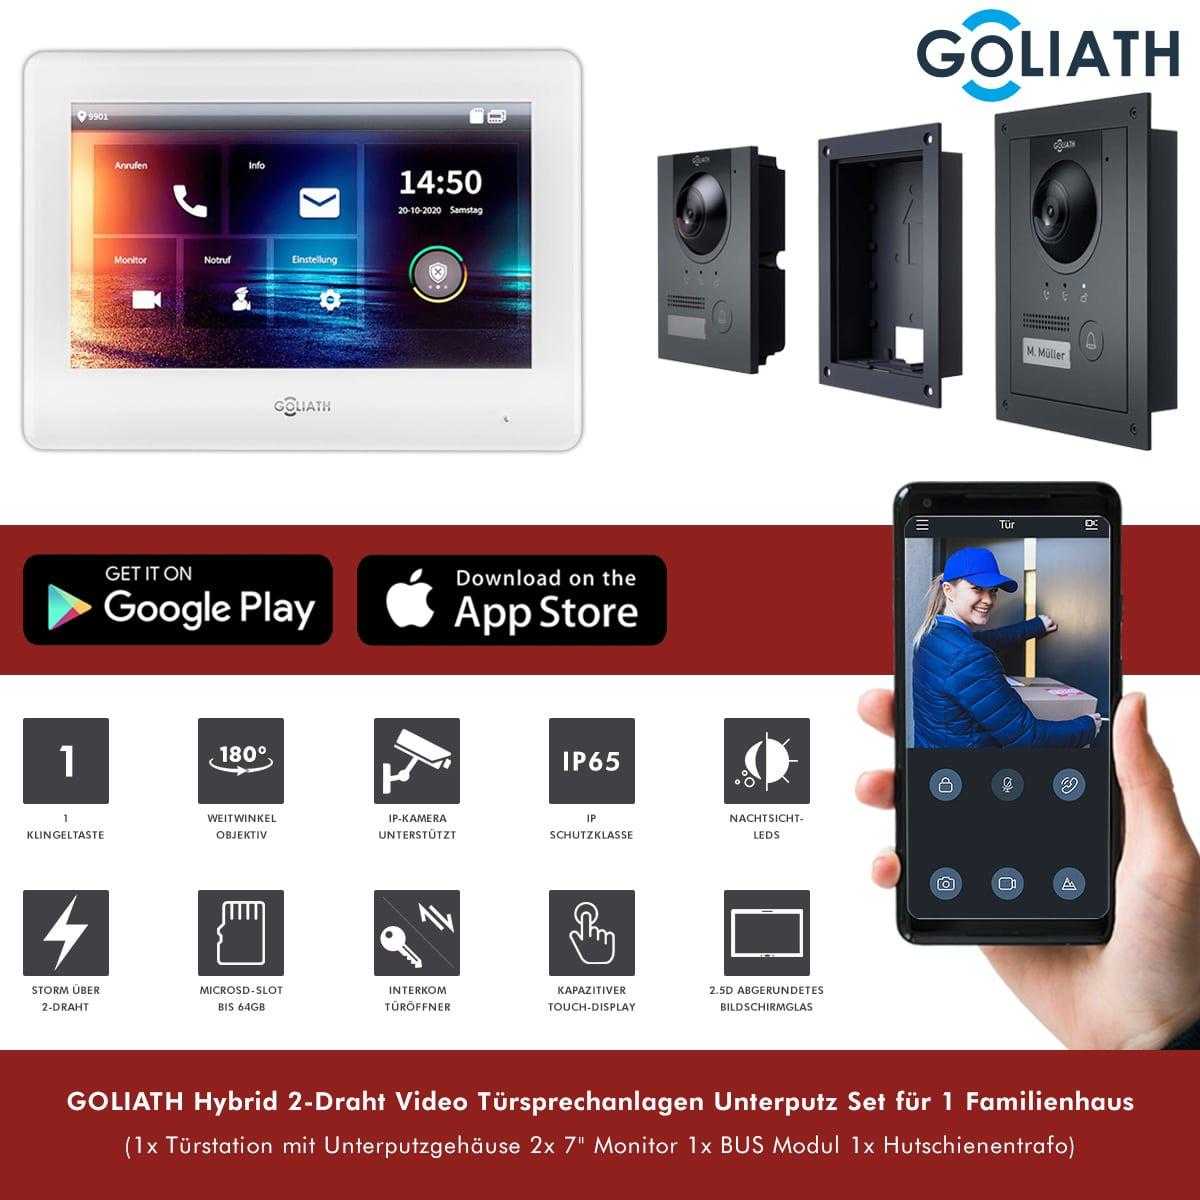 GOLIATH Hybrid 2-Draht Video Türsprechanlage Unterputz Set für 1 Familienhaus 2x 7 Monitor Weiß Anthrazit von Goliath-Intercom